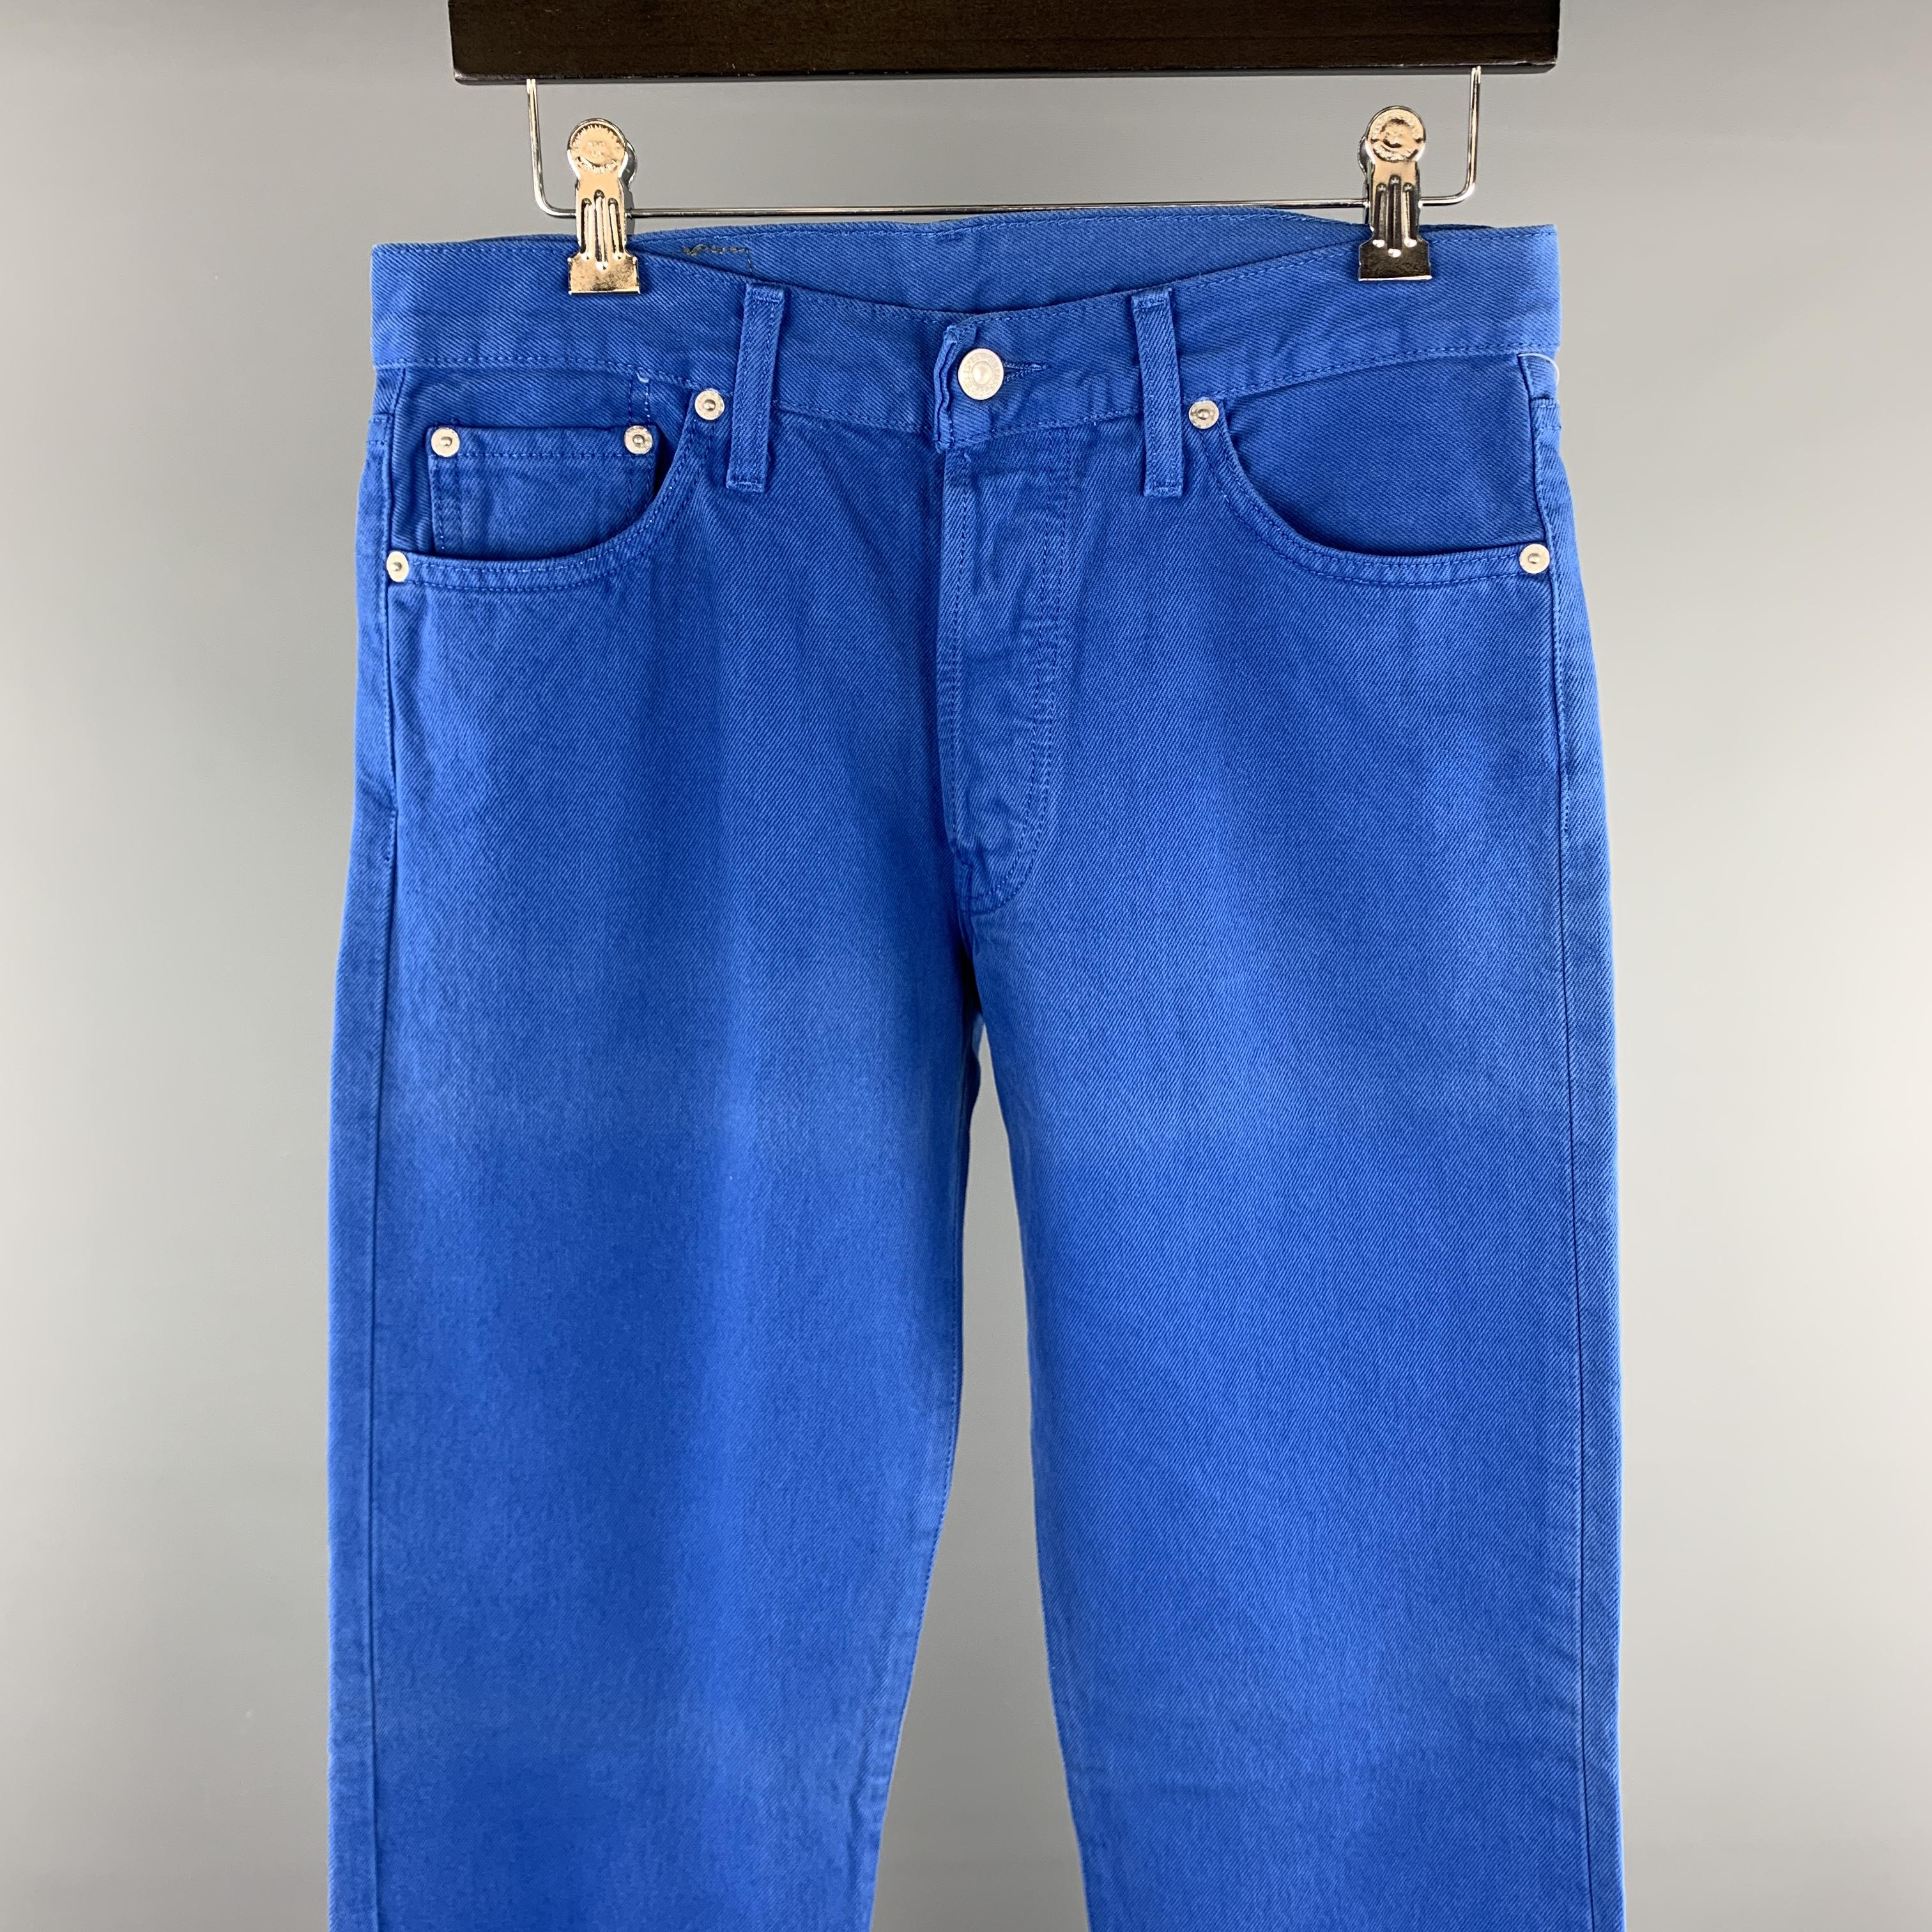 levis royal blue jeans